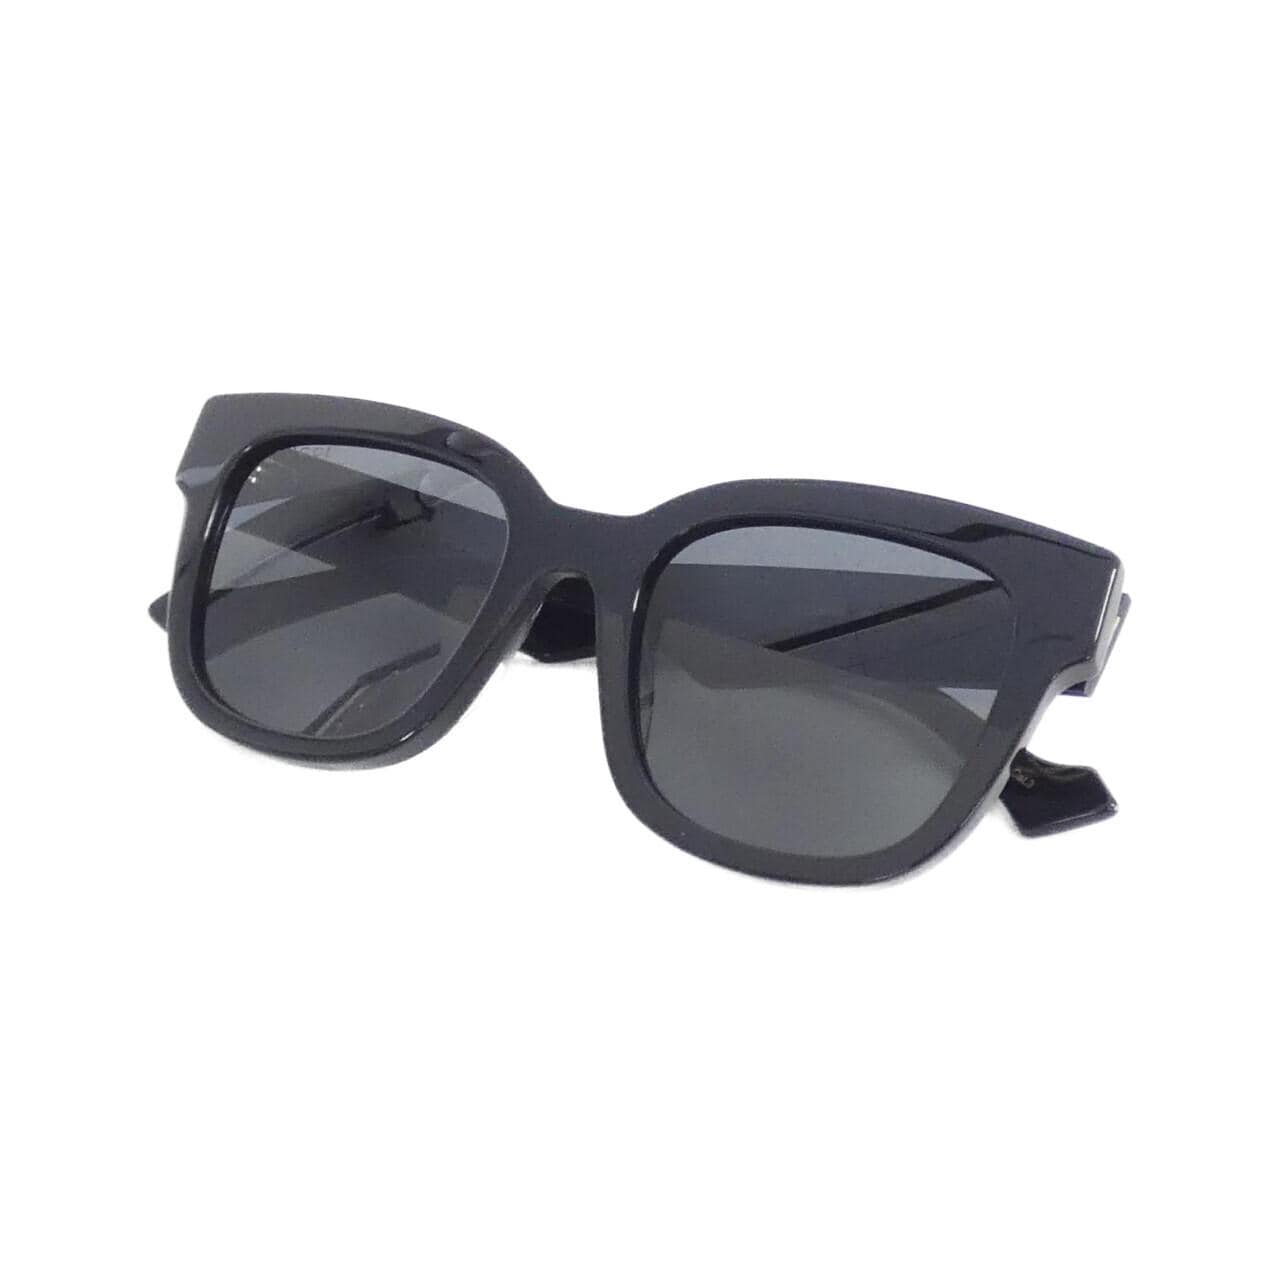 [BRAND NEW] Gucci 0998S Sunglasses